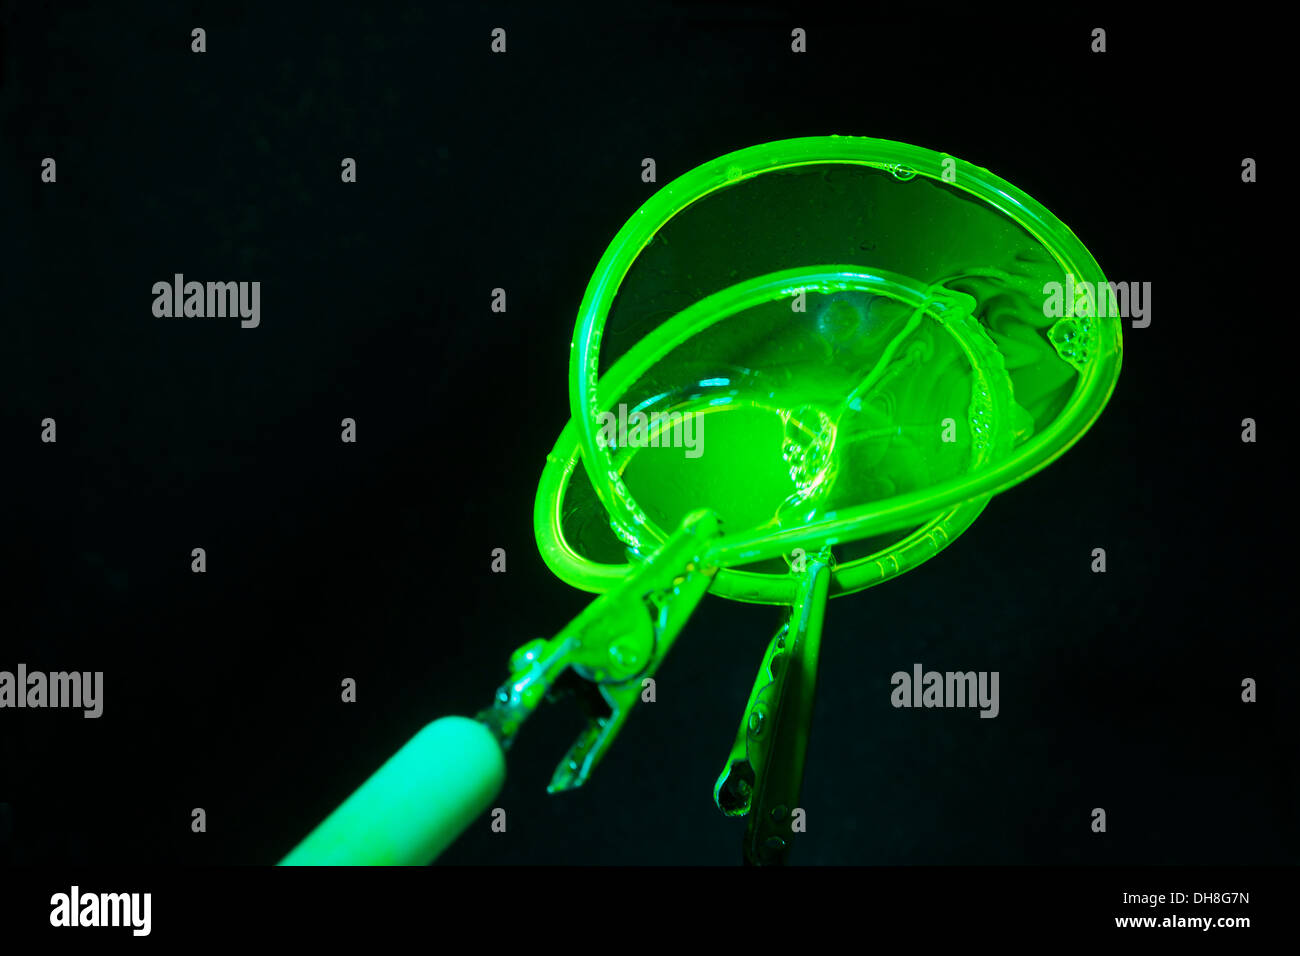 Dünner Gummischlauch unterstützt Seifenfilmblase. Untersuchungen, die zeigen, wie sich die Seifenfilmtopologie mit angewandten Mathematik ändert. Zeigt das Einklappen der Blase an. Stockfoto